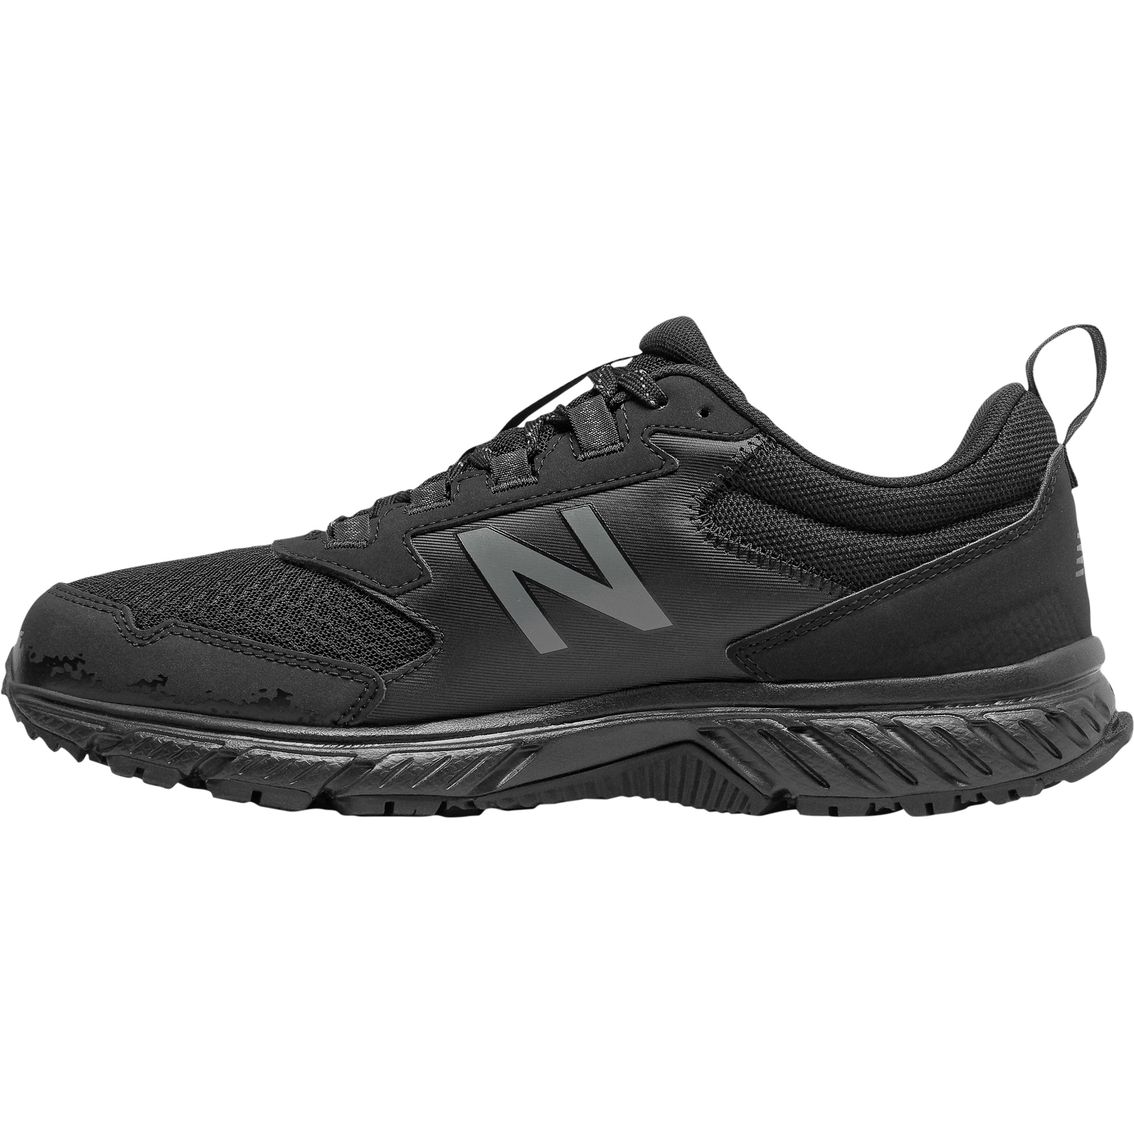 New Balance Men's Mt510lb5 Trail Shoes | Men's Athletic Shoes | Shoes ...